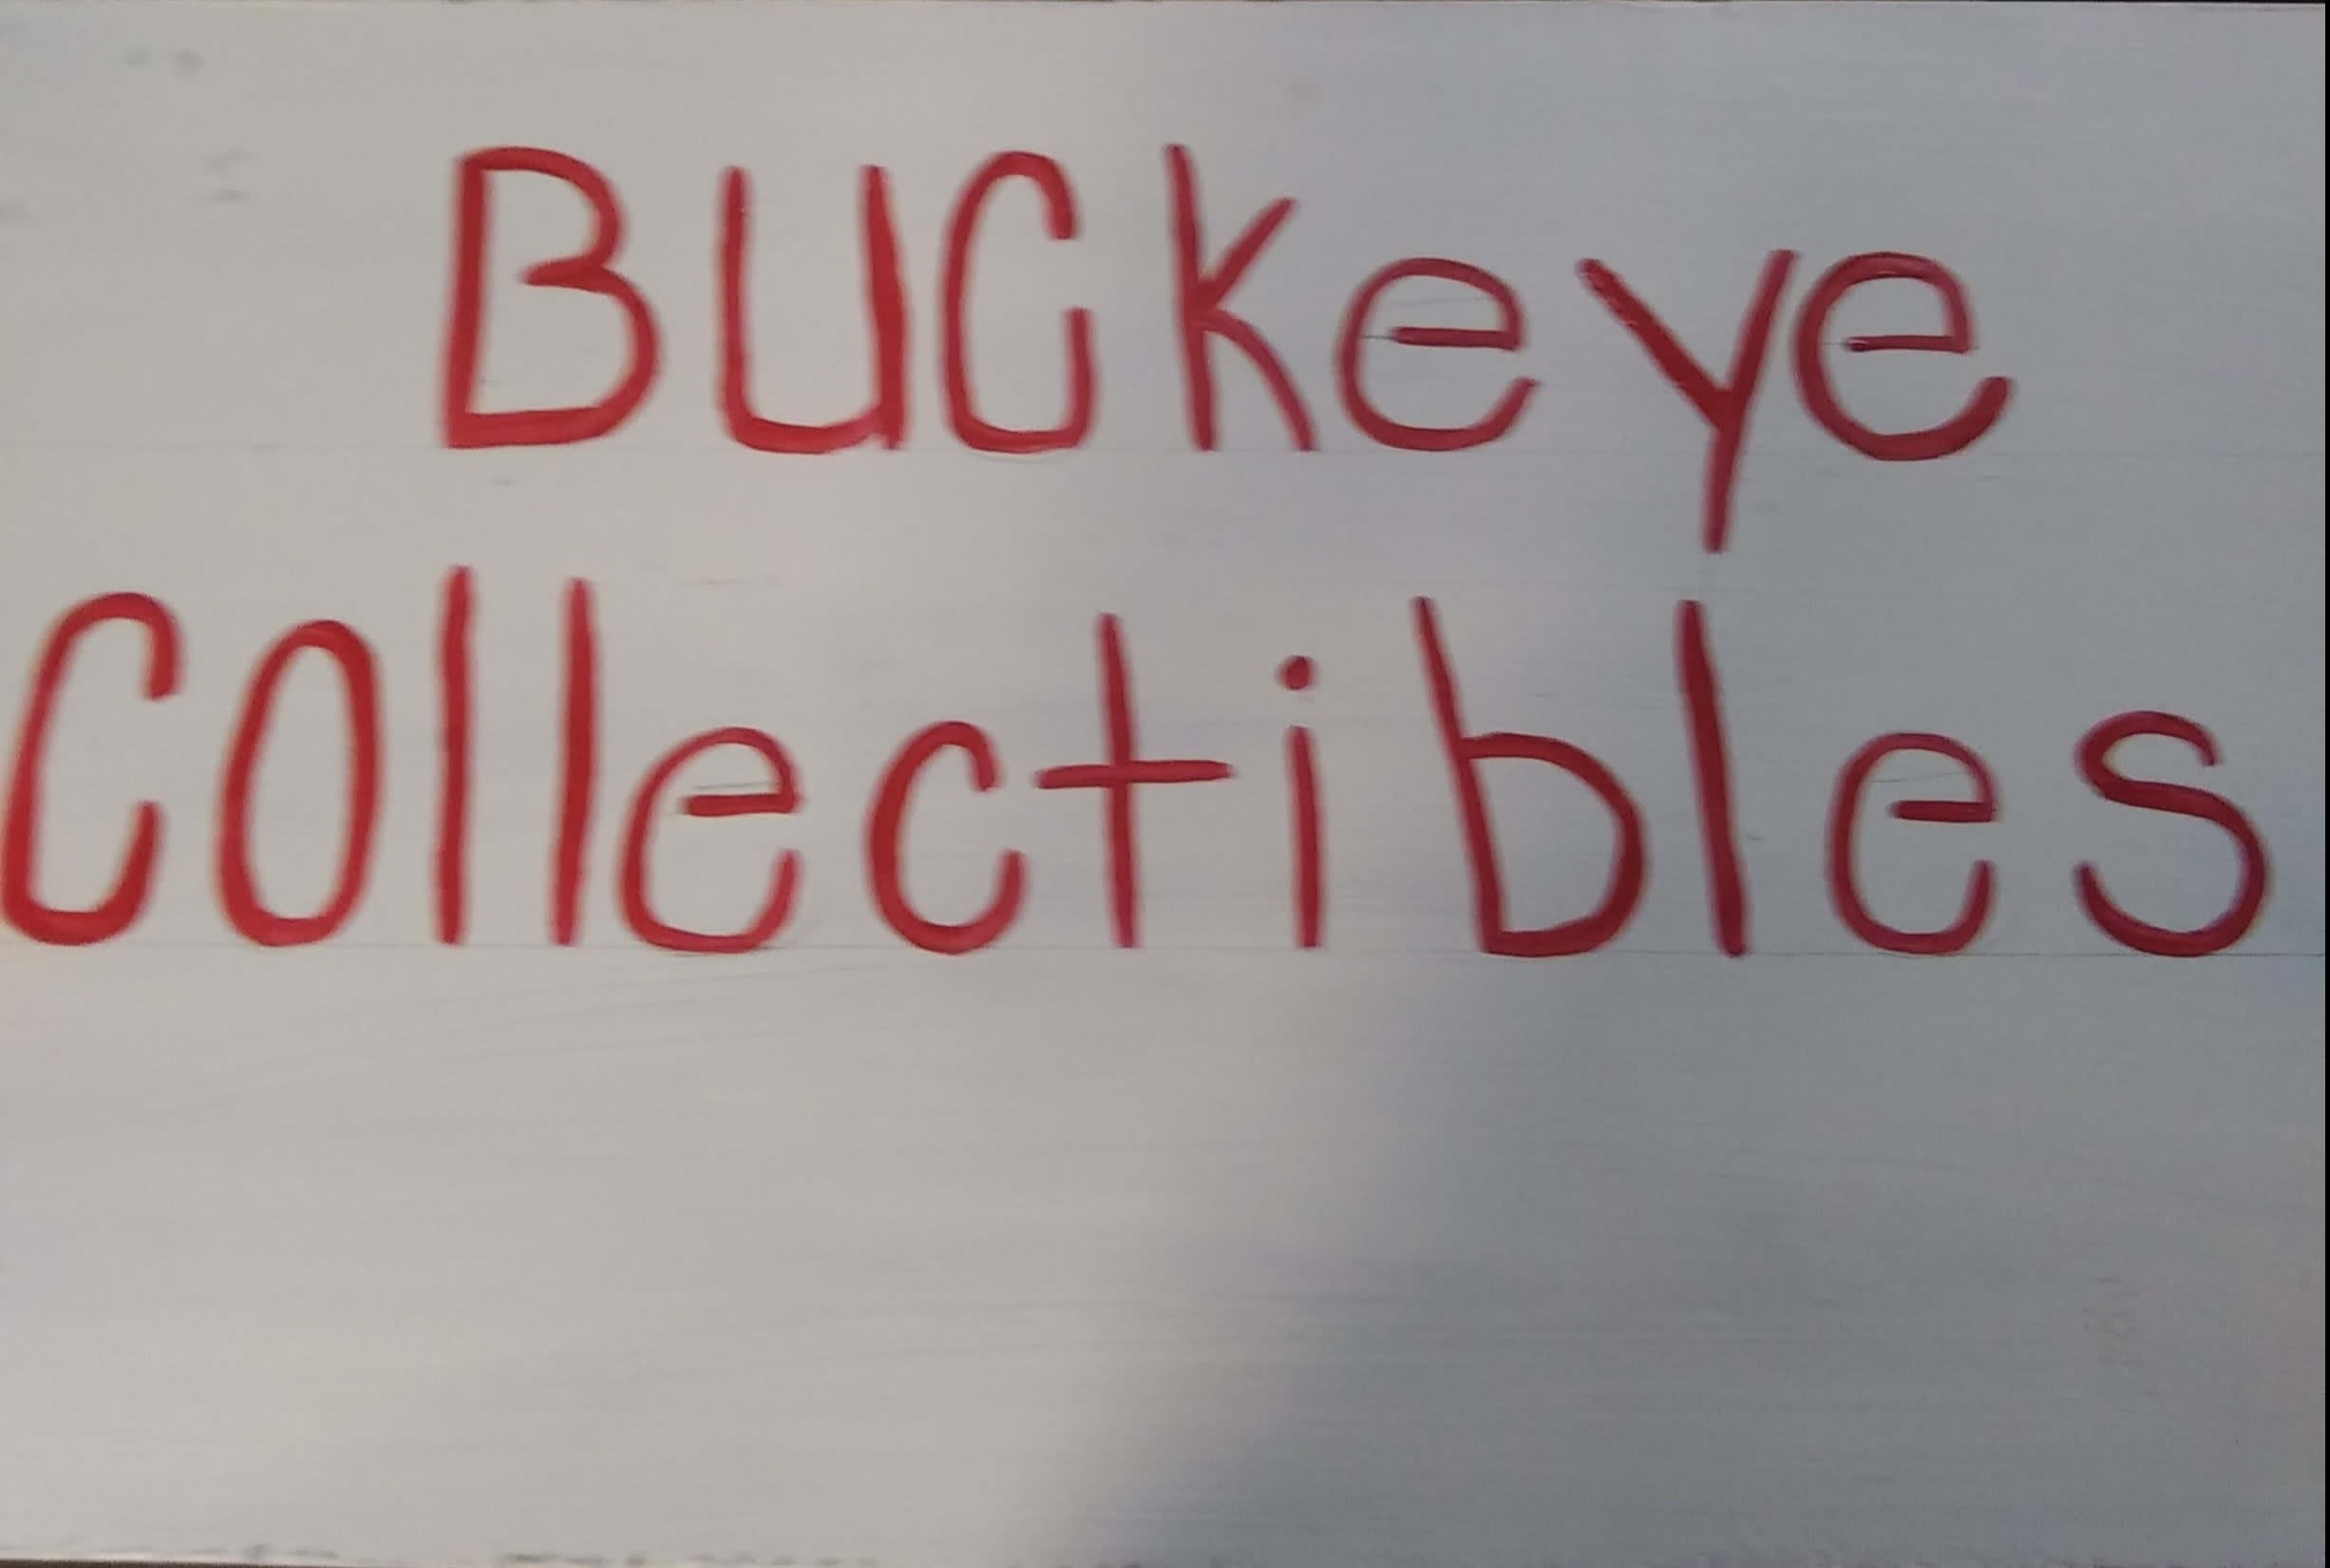 Buckeye Collectibles